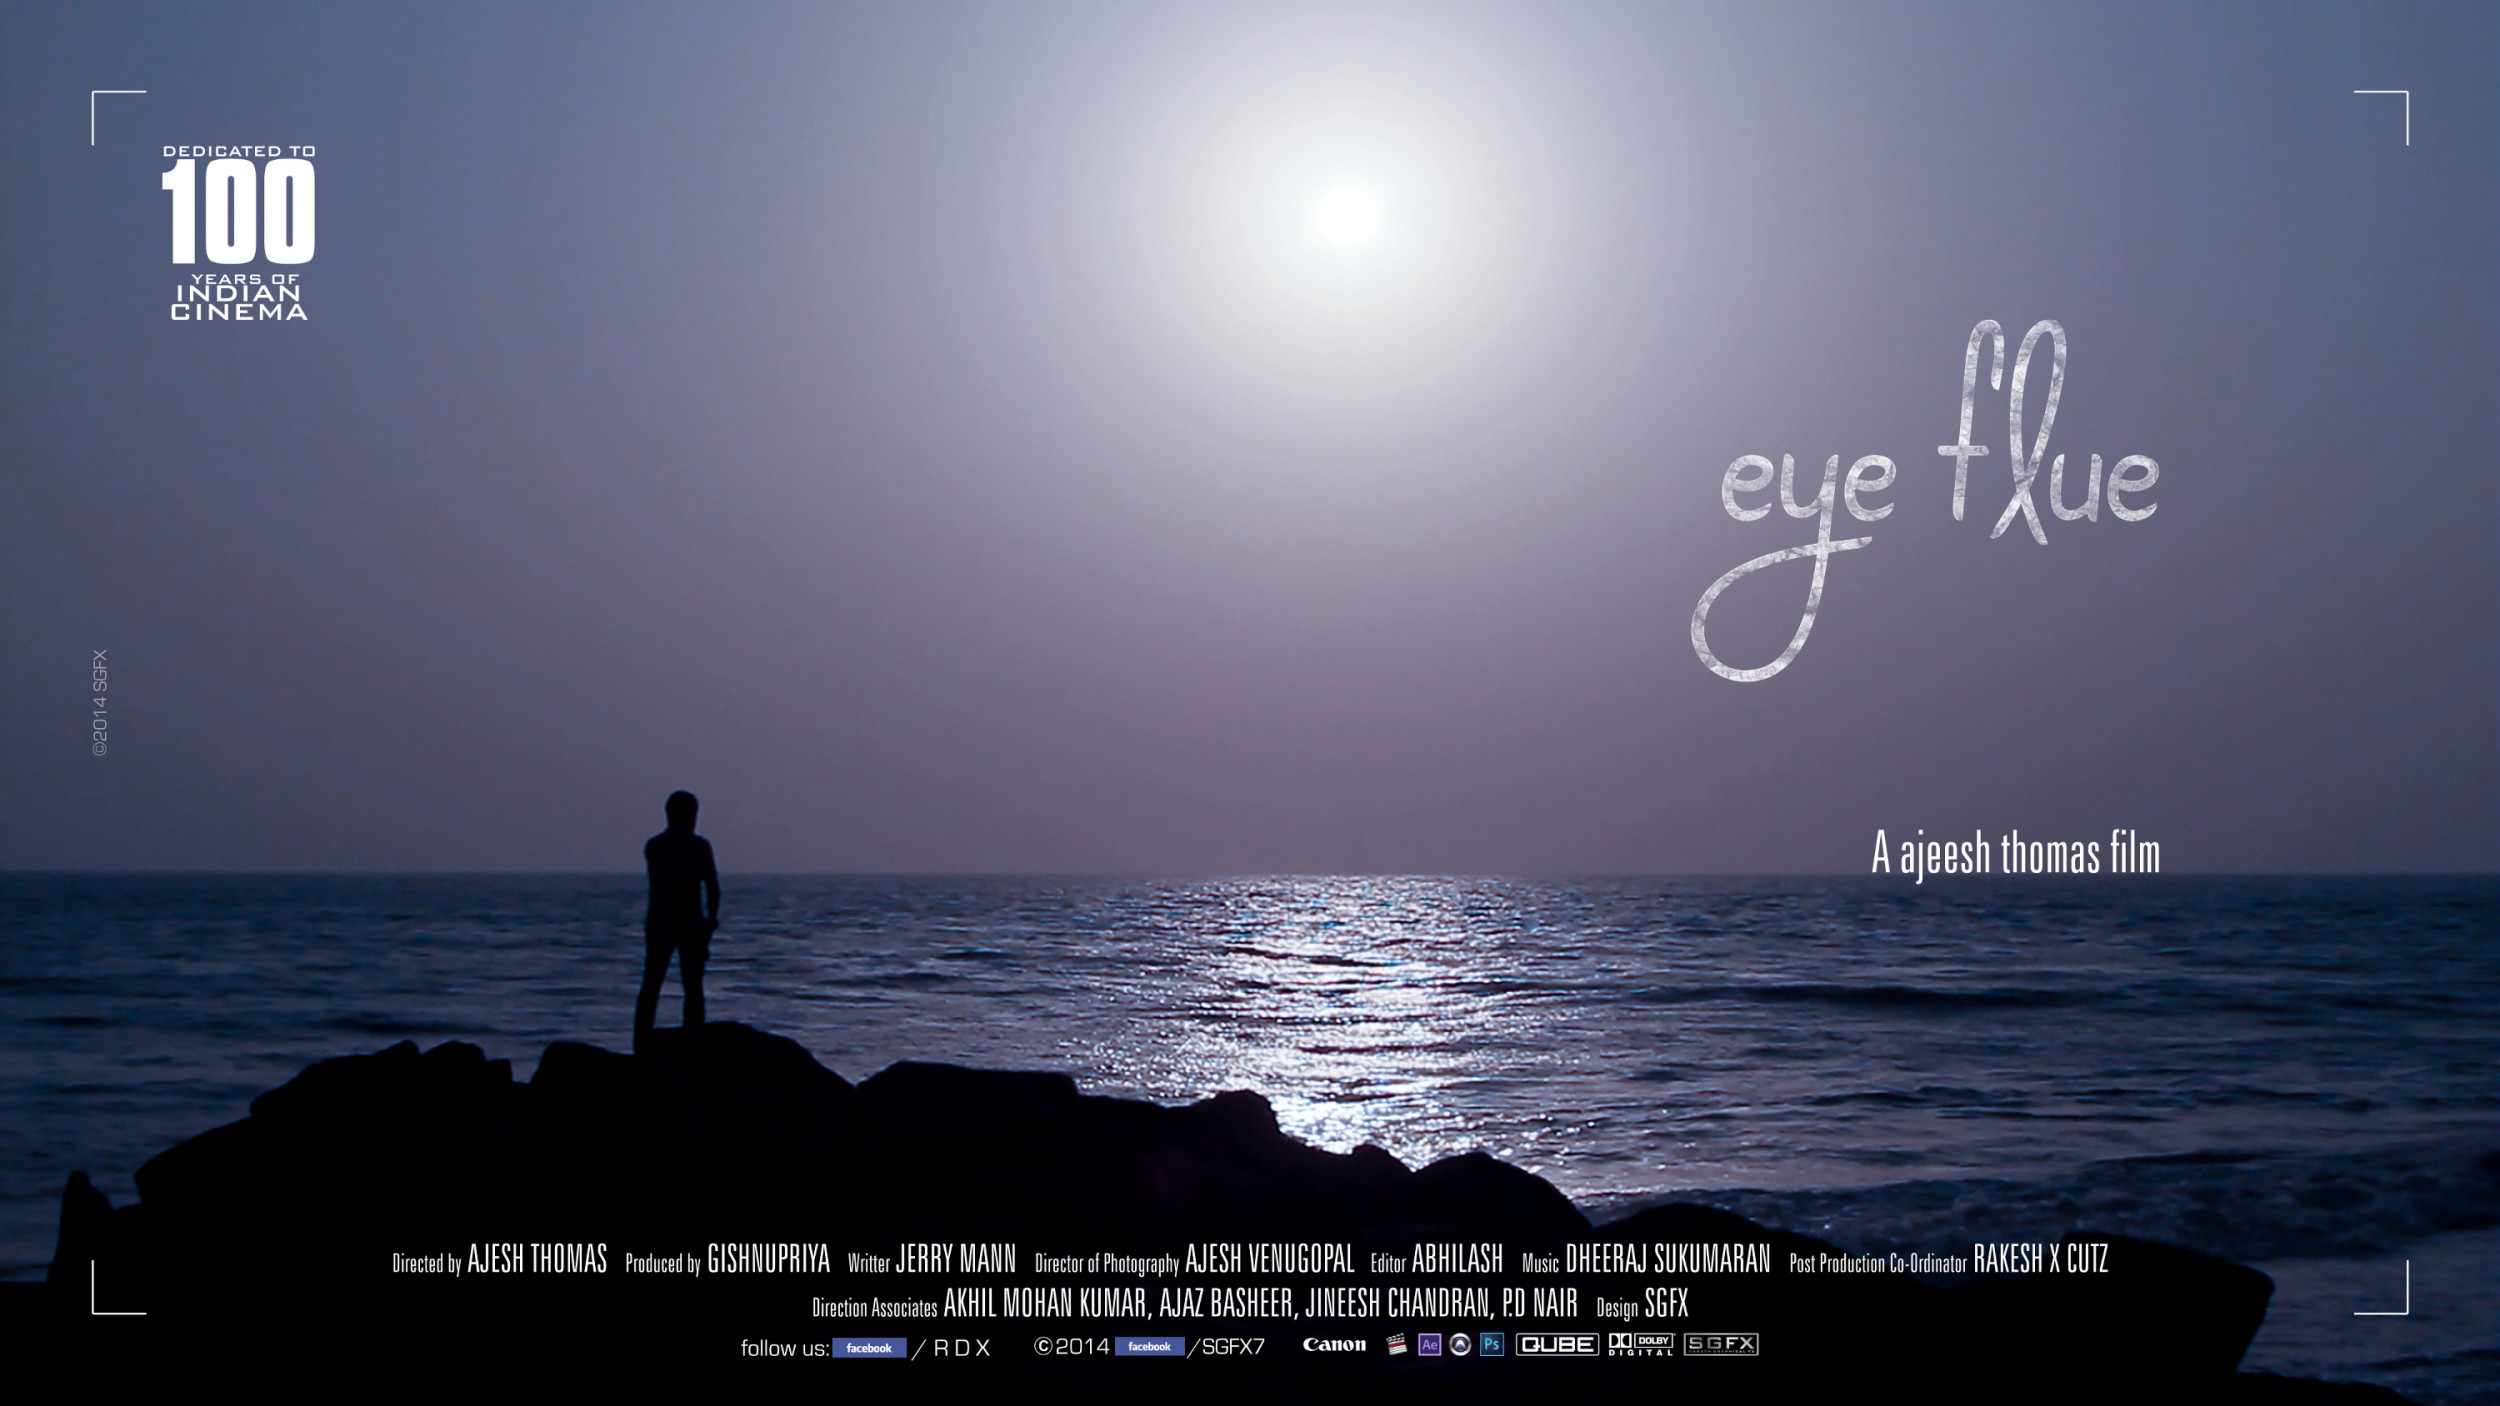 Mega Sized Movie Poster Image for eye flue